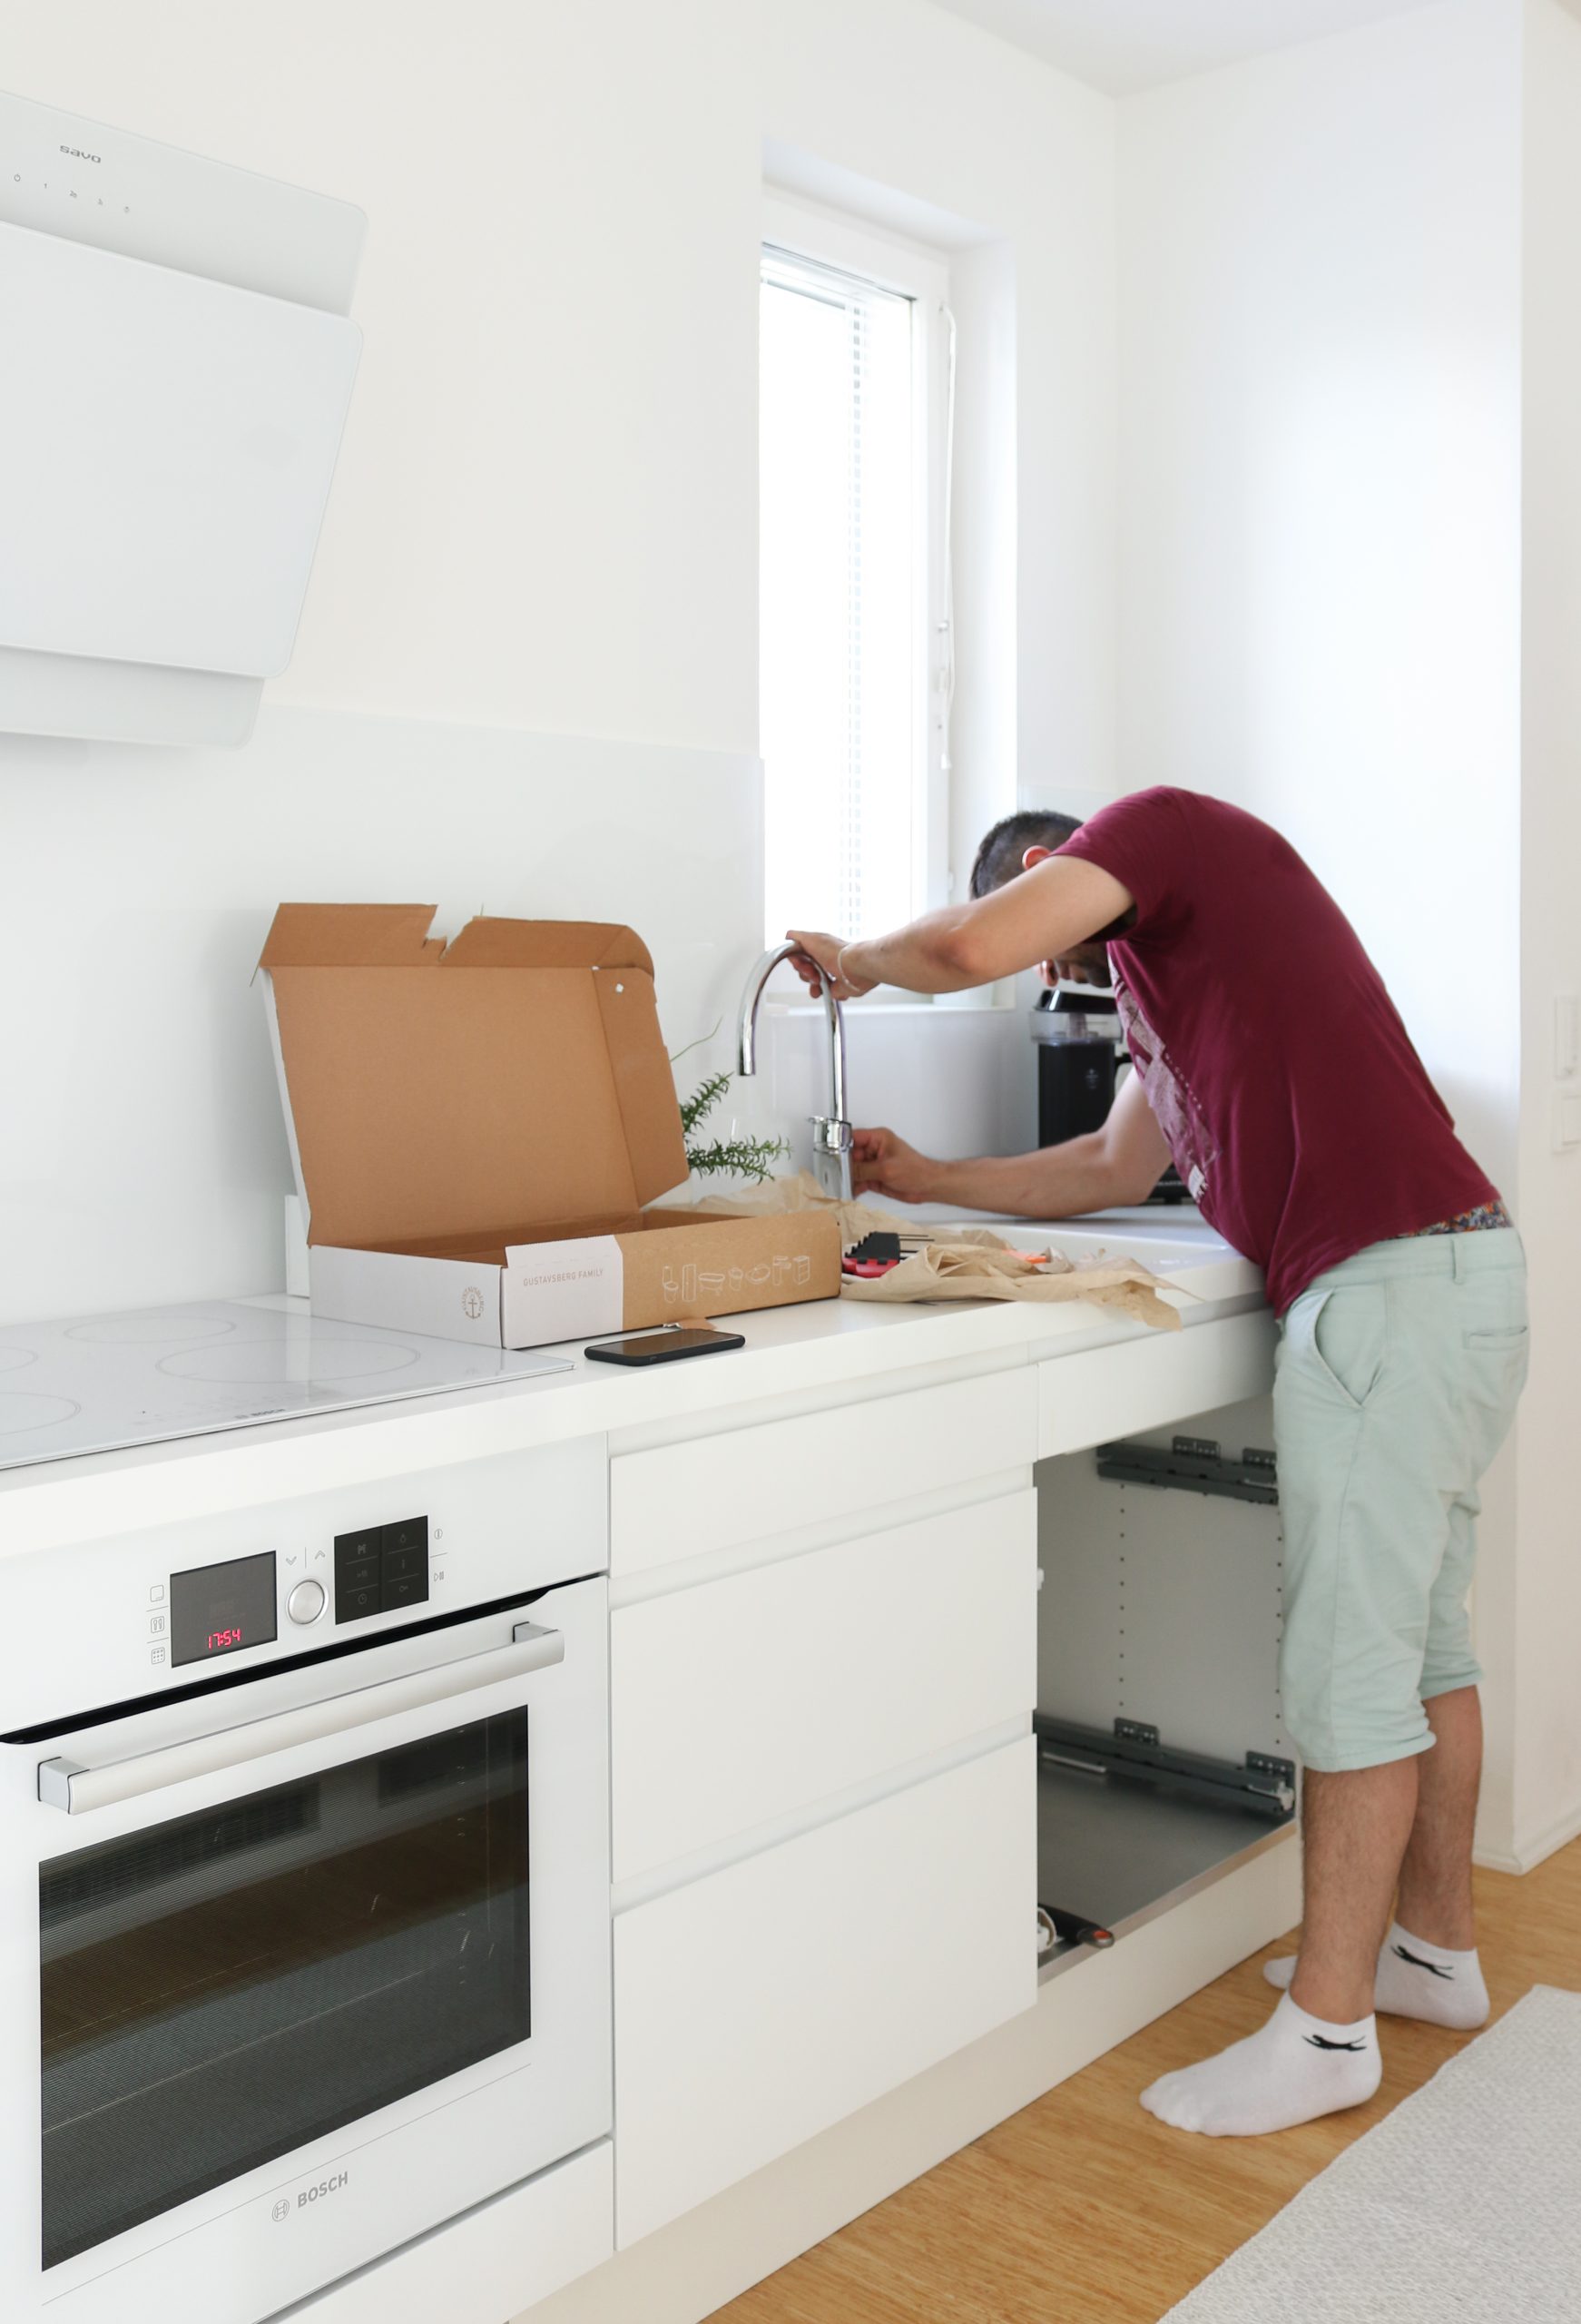 Gustavsberg Nautic keittiöhanan asennus on helppoa pika-asennusmutterin ansiosta - Keittiöremontti Omakotivalkoinen